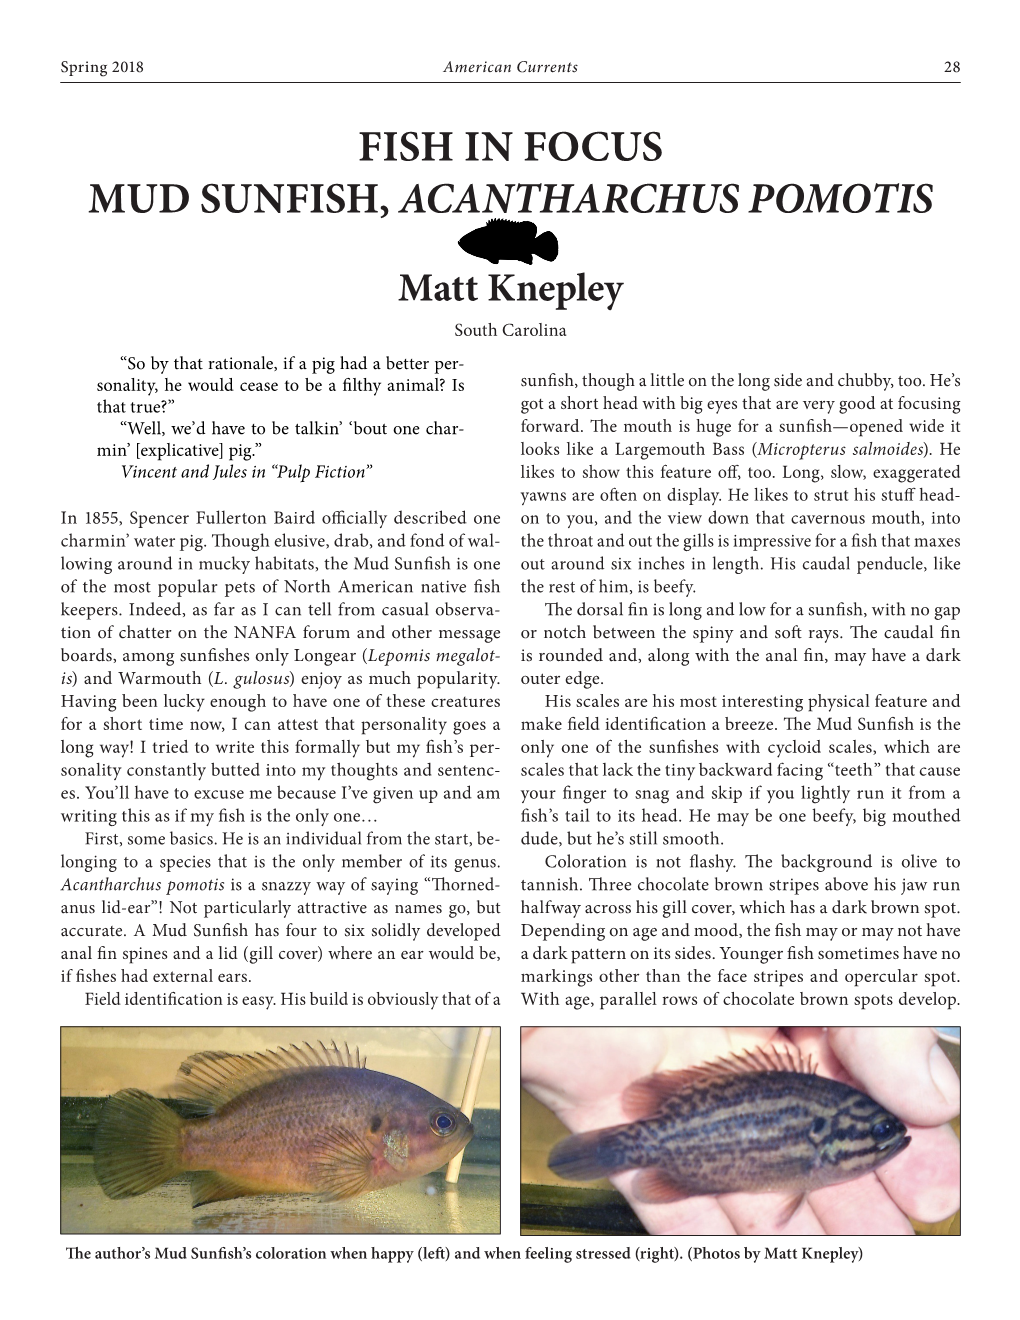 Fish in Focus Mud Sunfish, Acantharchus Pomotis